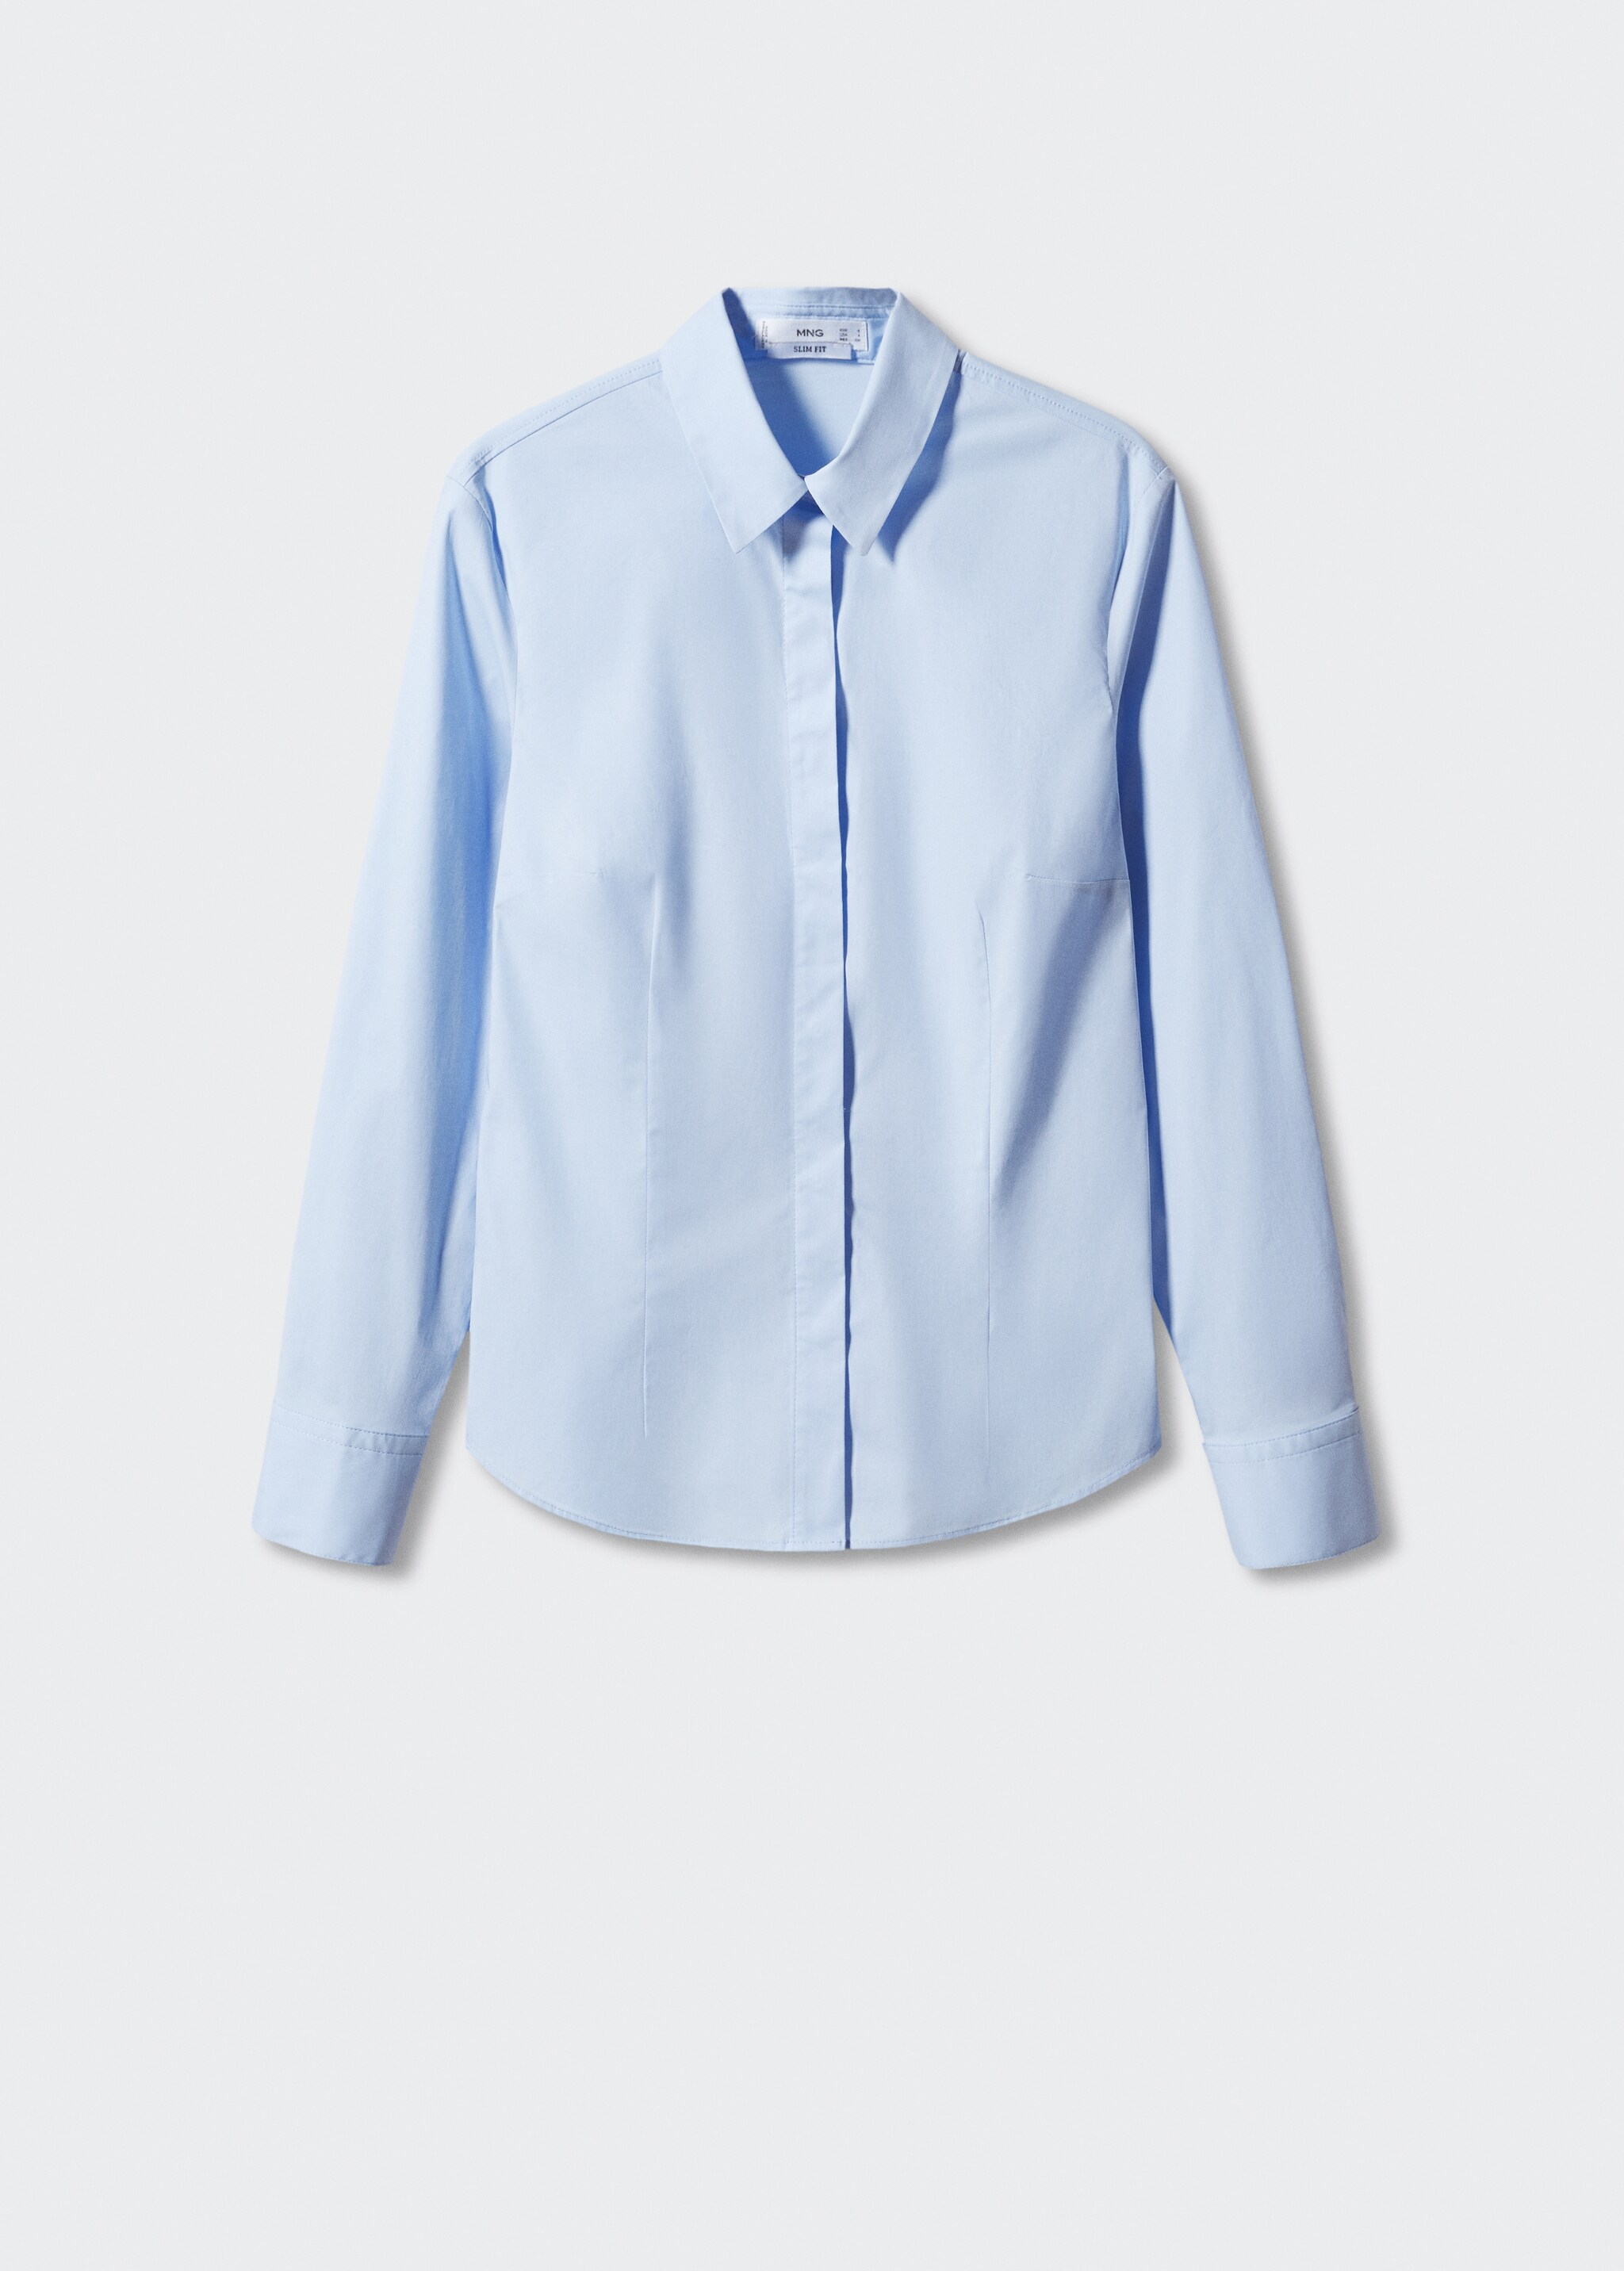 Camisa ajustada de algodão - Artigo sem modelo